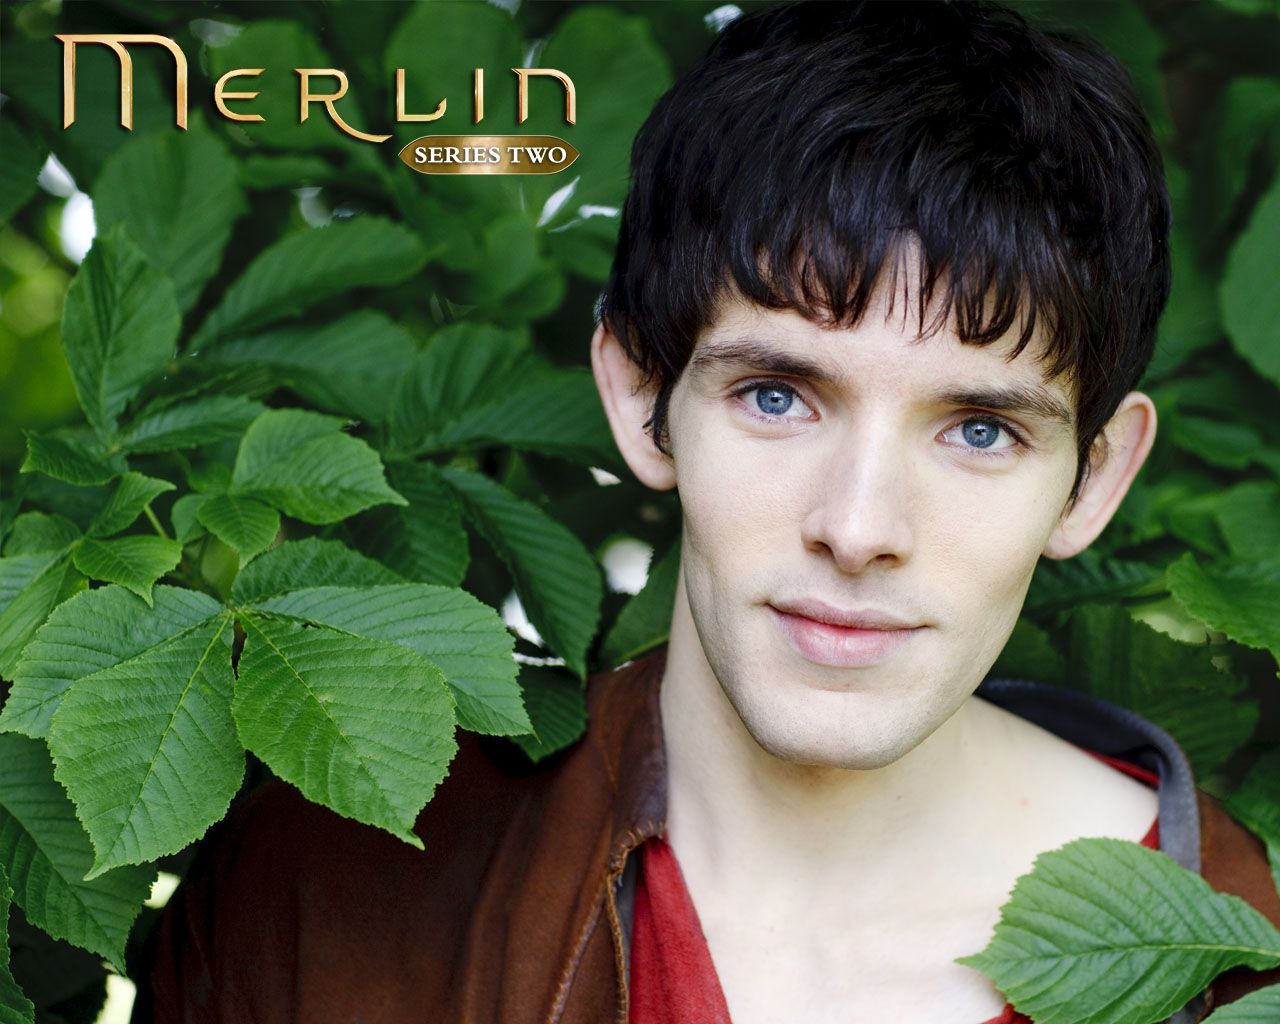 Merlin on bbc wallpaper merlin desktop merlin colin morgan merlin series